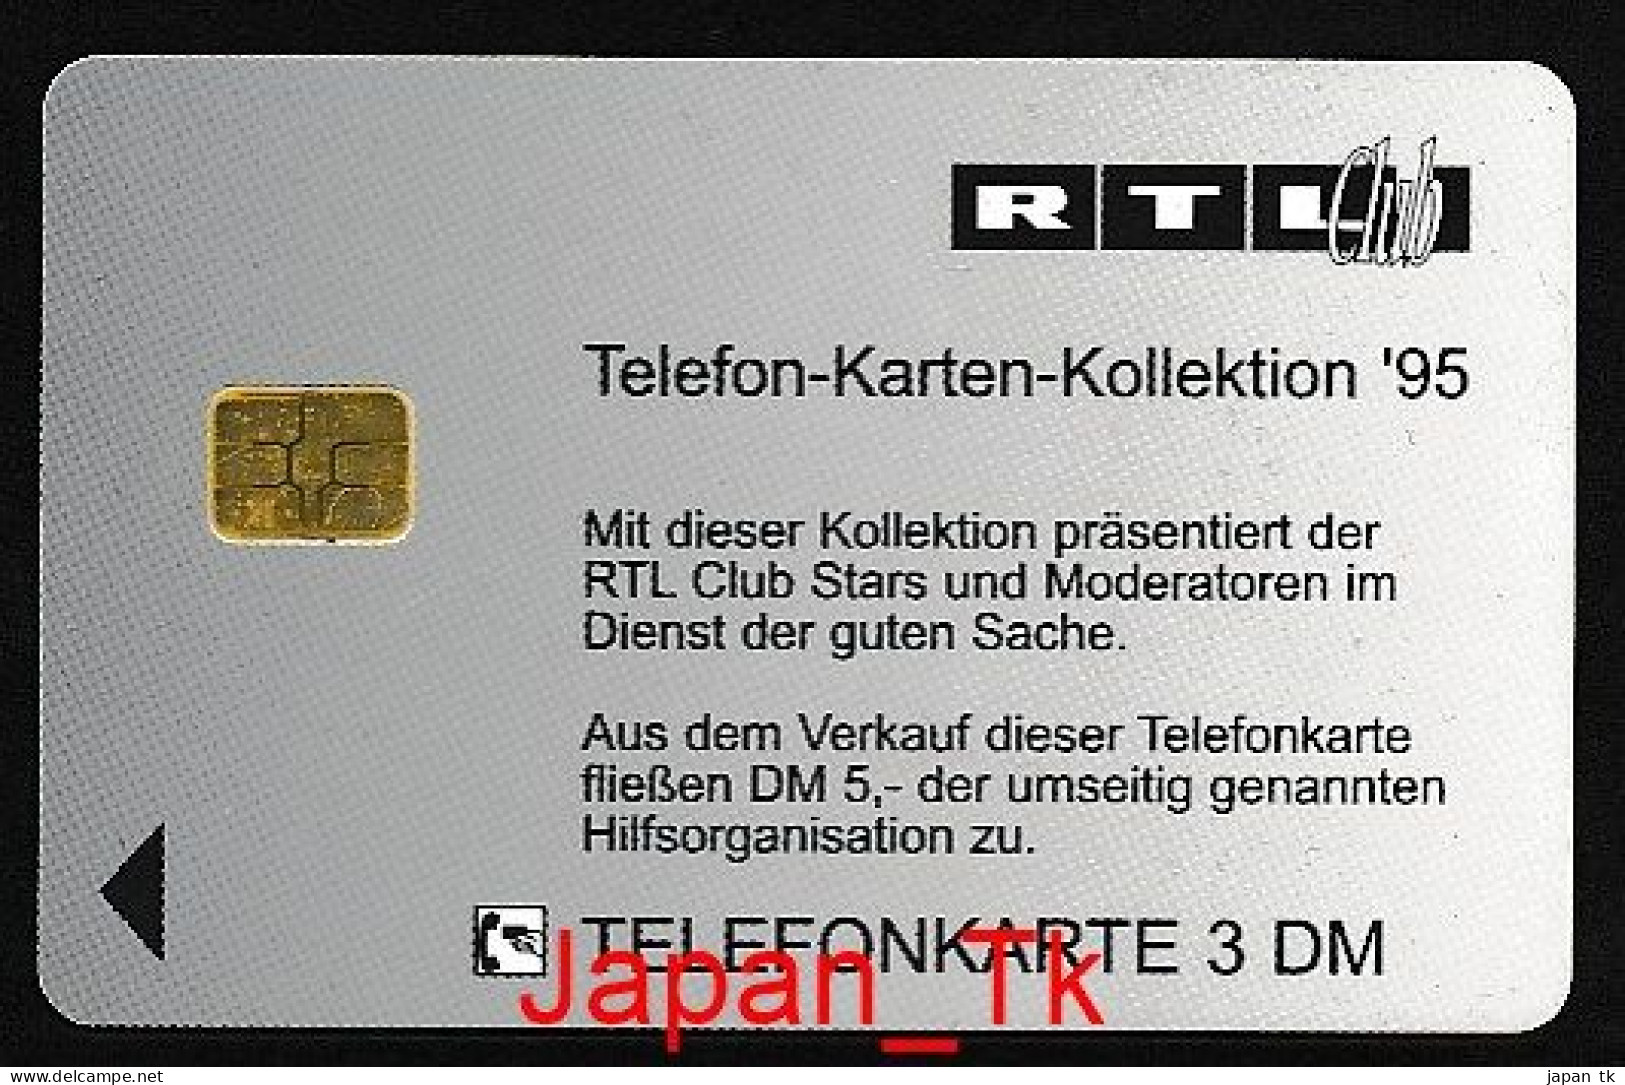 GERMANY O 538 95 RTL Thomas Gottschalk  - Aufl   2 000 - Siehe Scan - O-Series: Kundenserie Vom Sammlerservice Ausgeschlossen